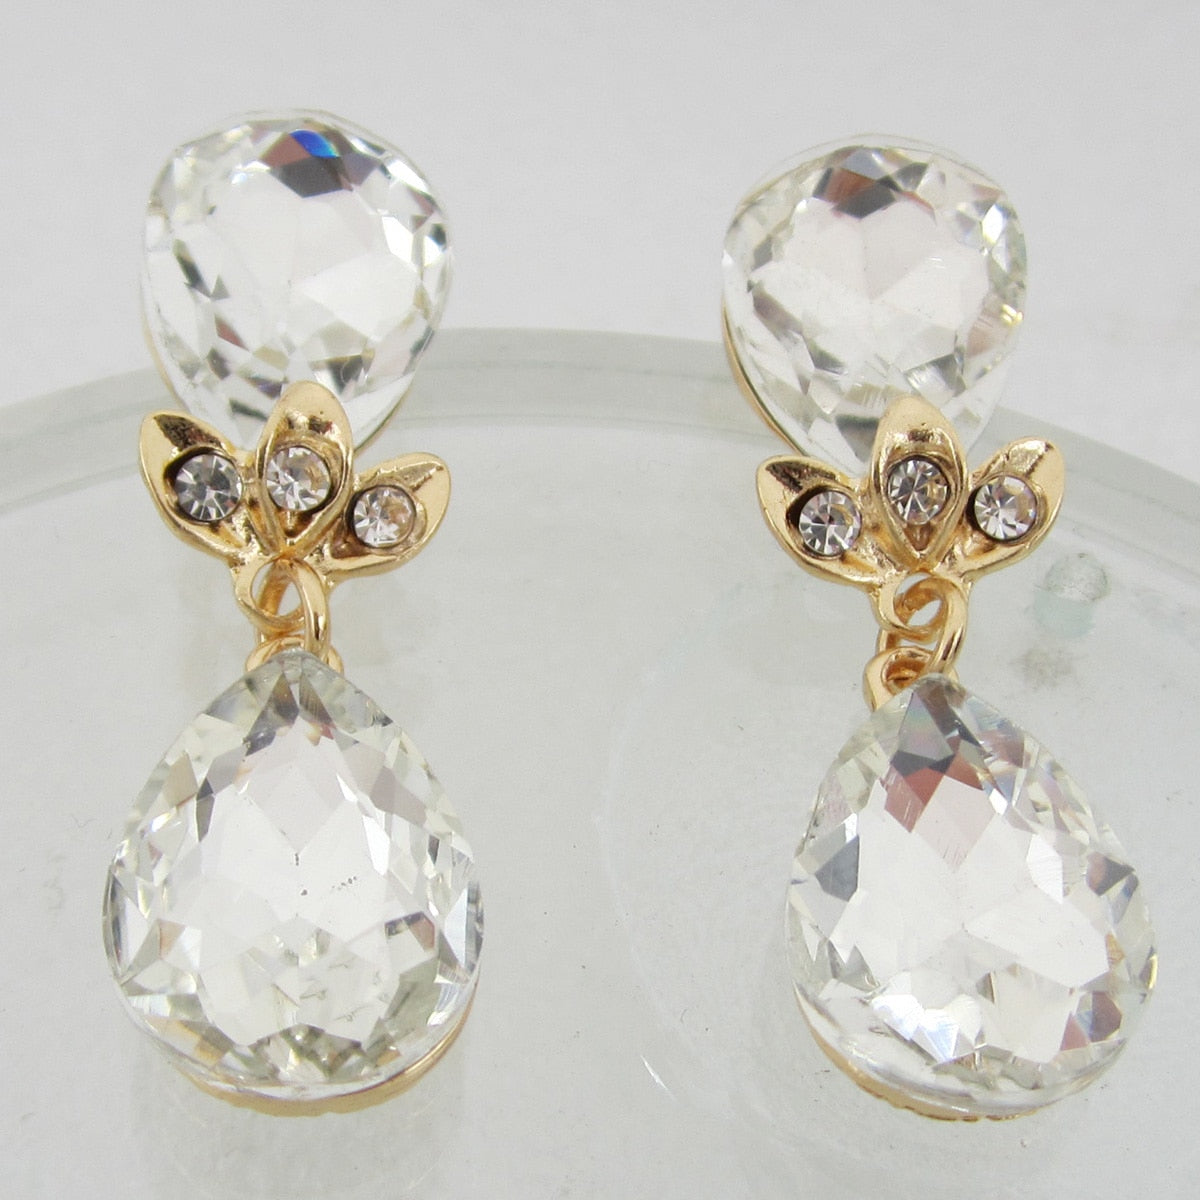 Delicate Water Drop Shaped Earrings For Women Luxury Crystal Ear Earrings